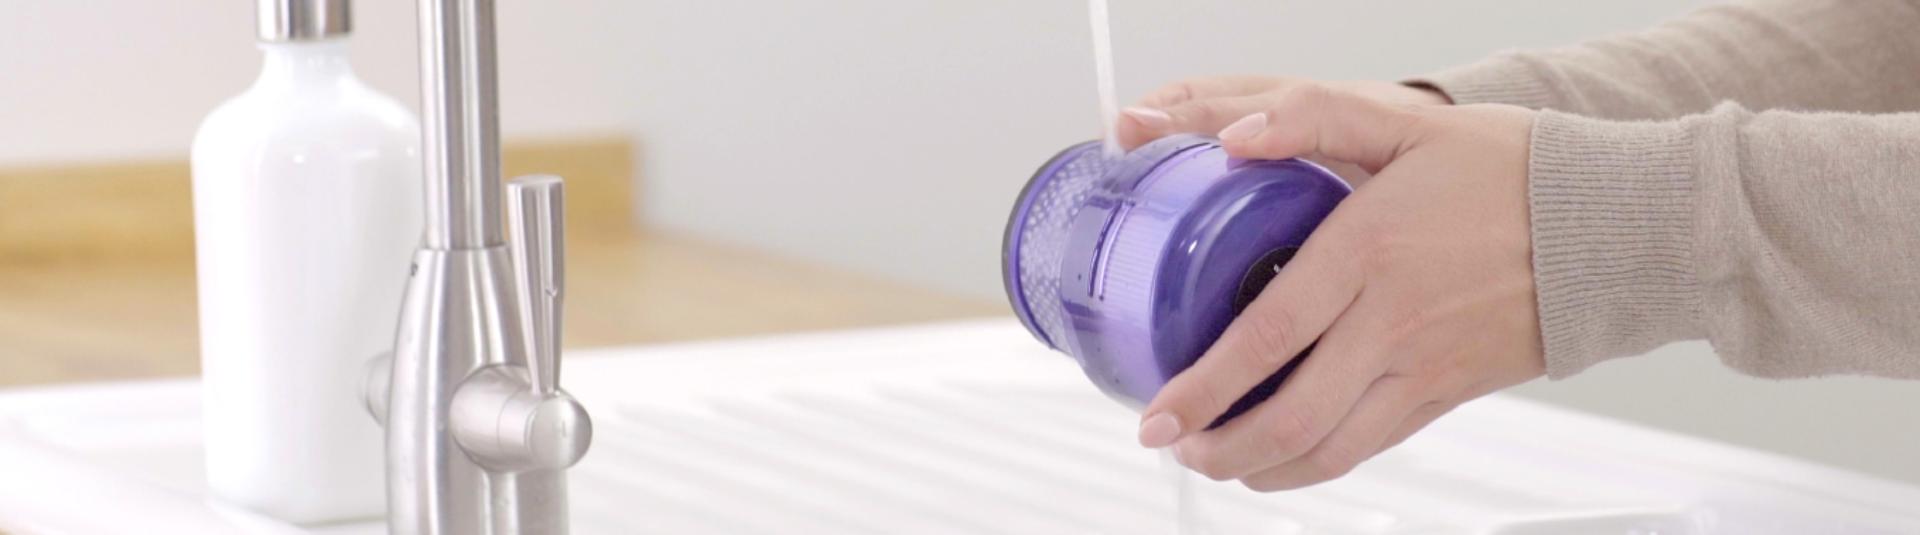 影片顯示無線吸塵機的保養技巧